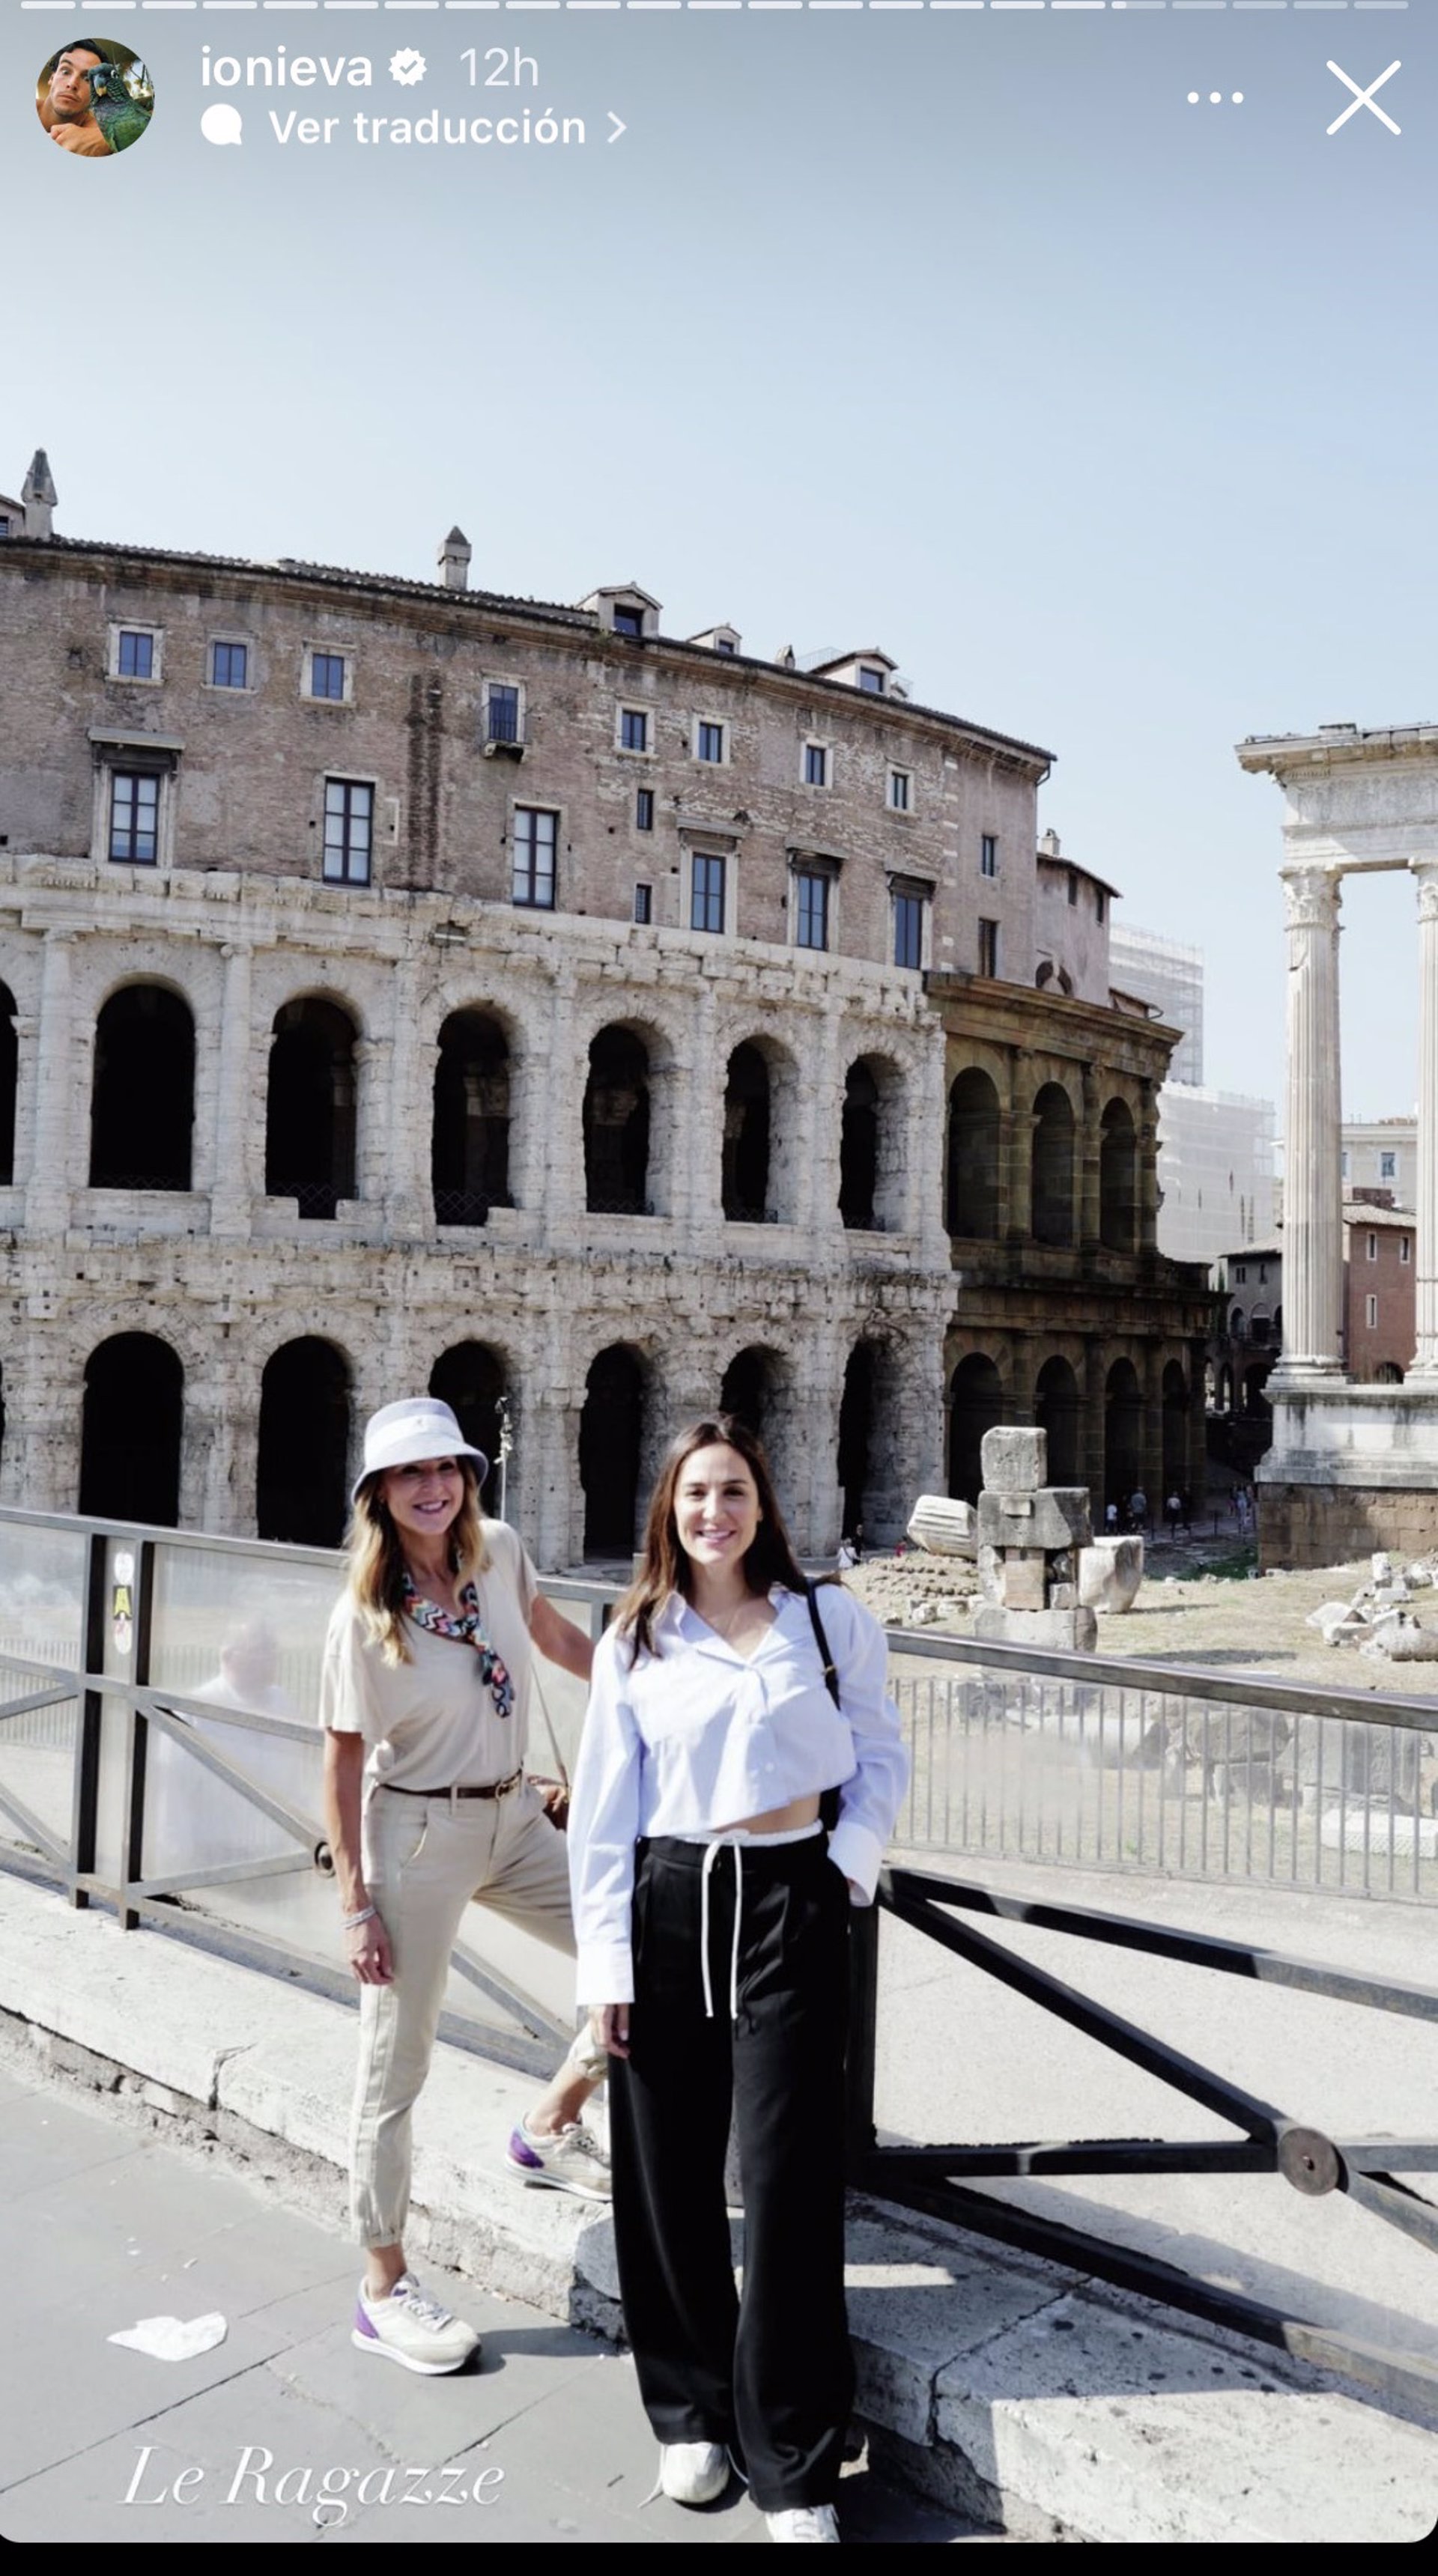 Tamara Falcó y Carolina Molas, posando ante el Coliseo